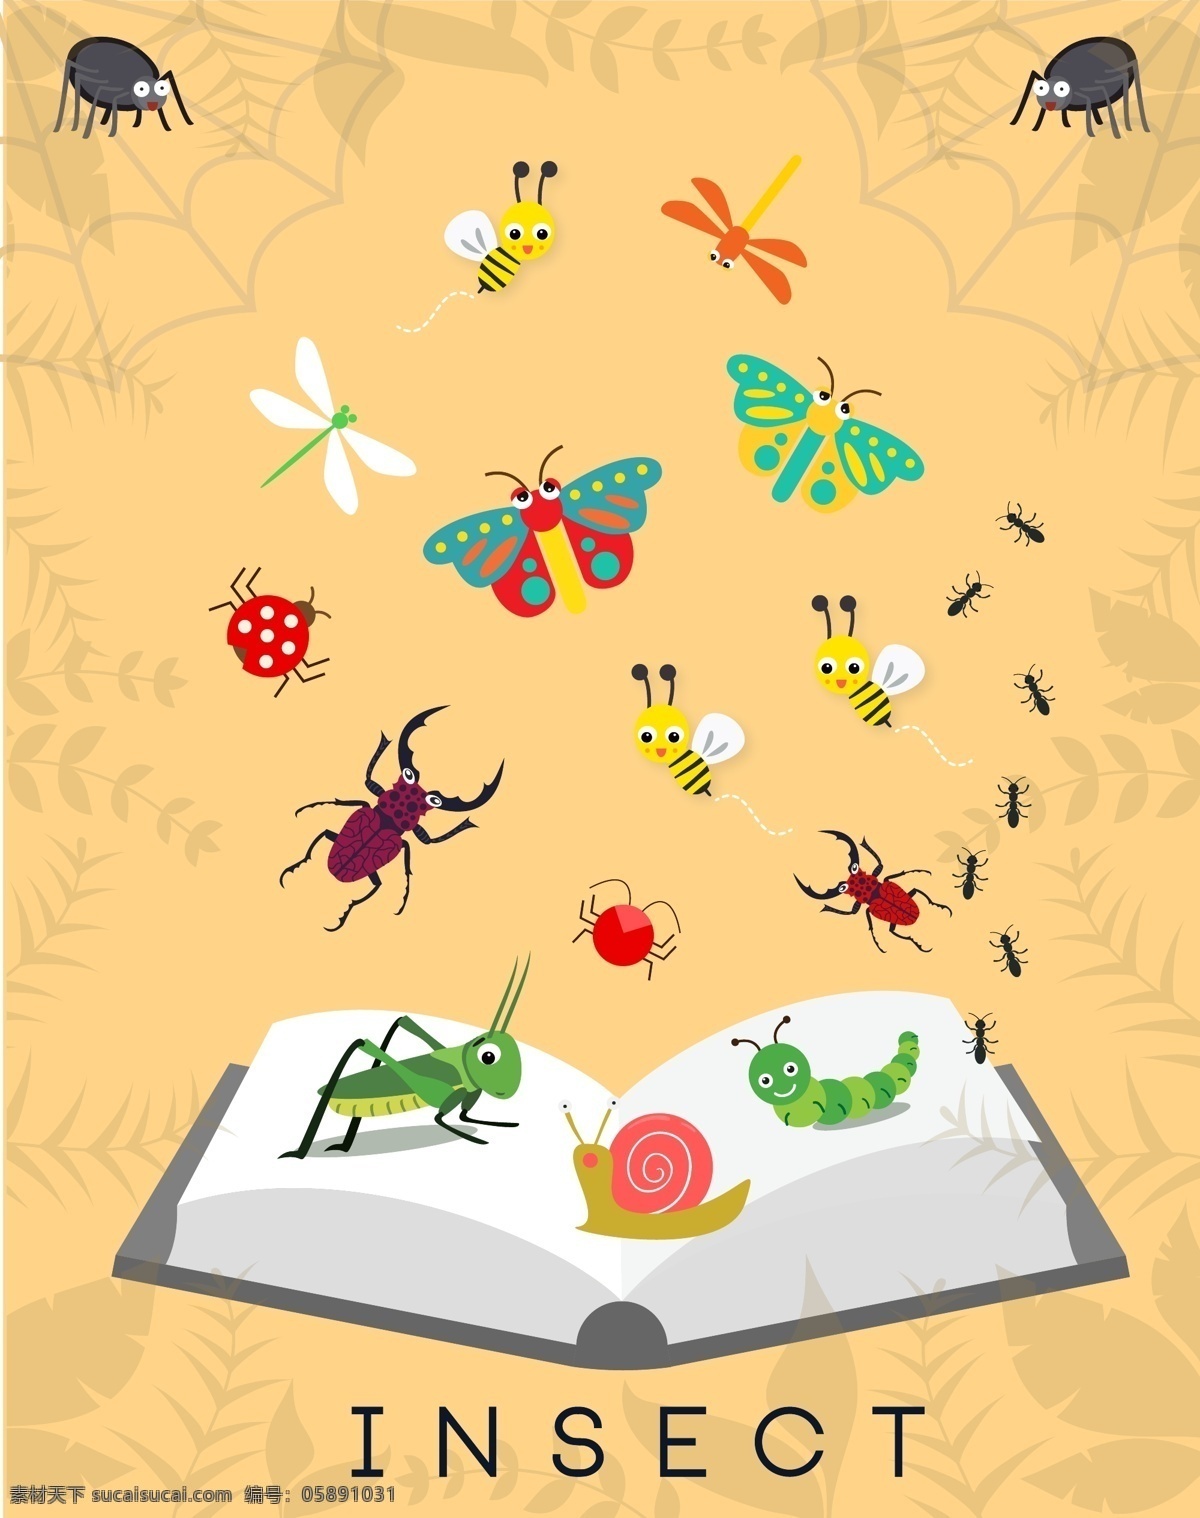 矢量 书籍 昆虫 昆虫素材 矢量书籍 手绘昆虫 矢量素材